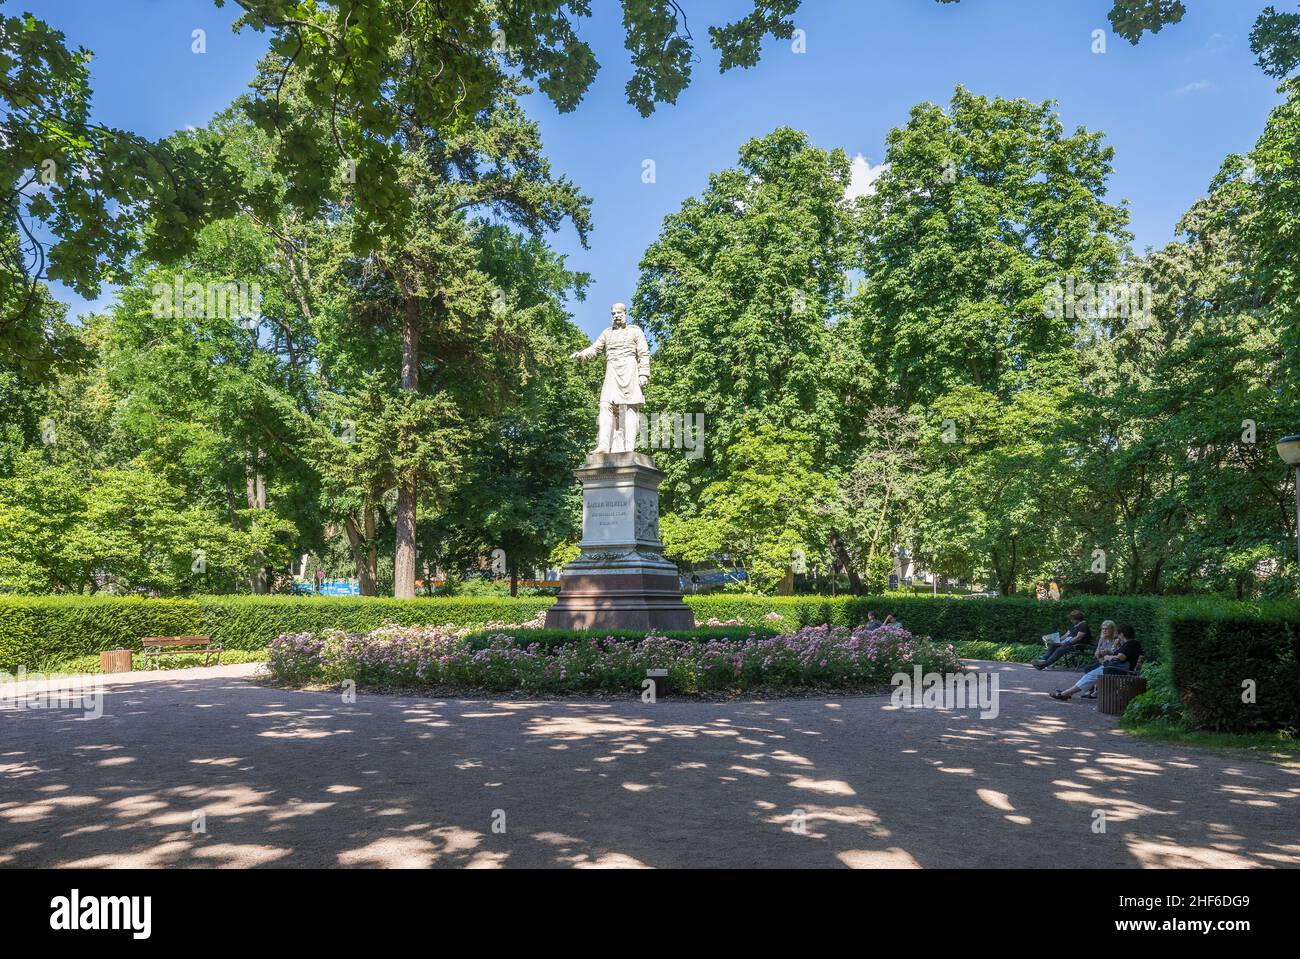 Deutschland, Hessen, Wiesbaden, Denkmal für Kaiser Wilhelm I. im wärmeren Damm-Park Stockfoto